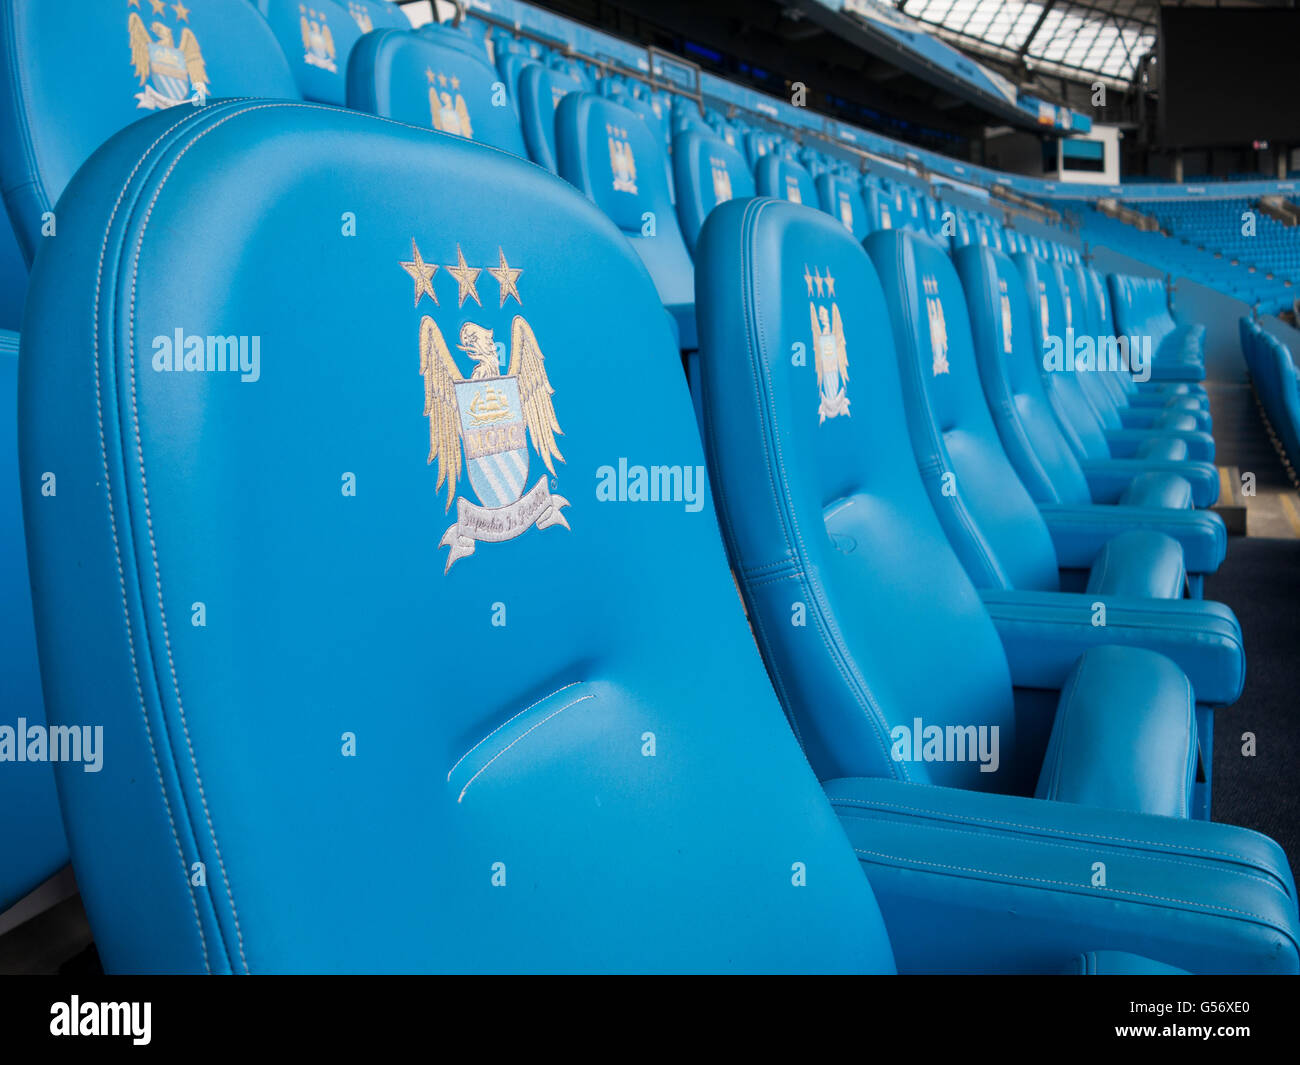 Los asientos en el estadio Etihad Stadium de Manchester City Football Club UK Foto de stock